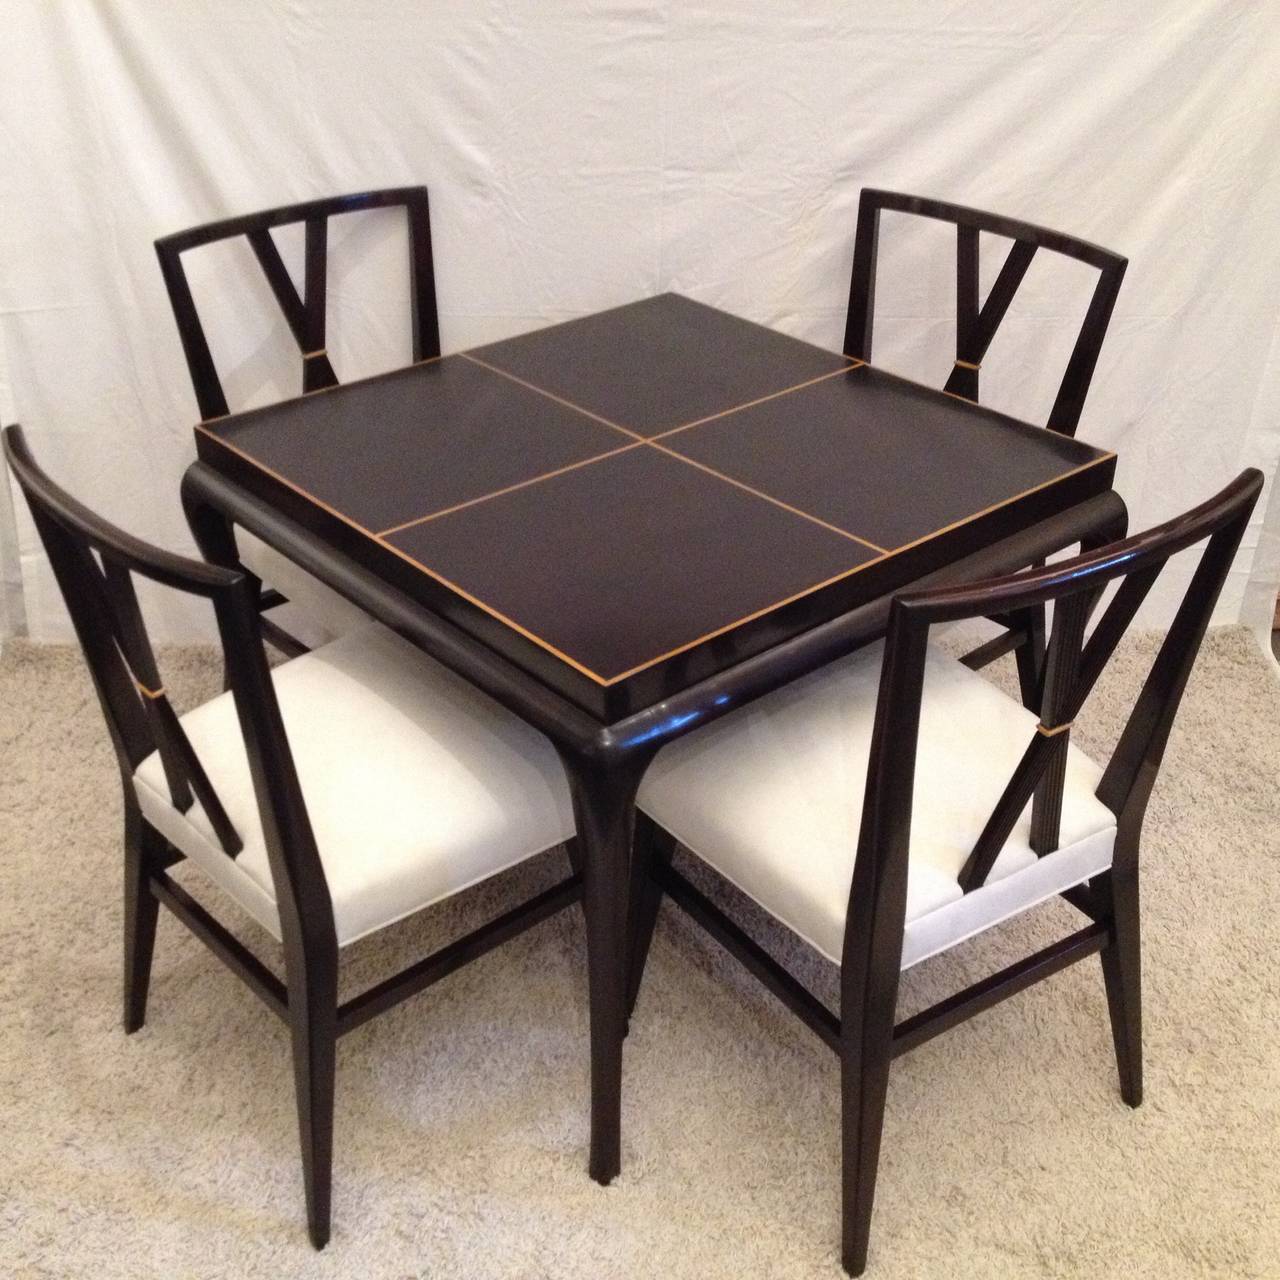 Table à cartes ou petite table à manger Tommi Parzinger et quatre chaises à double dossier en X, rare acajou foncé Hollywood incrusté.
Dimensions de la table : 36 x 36 29